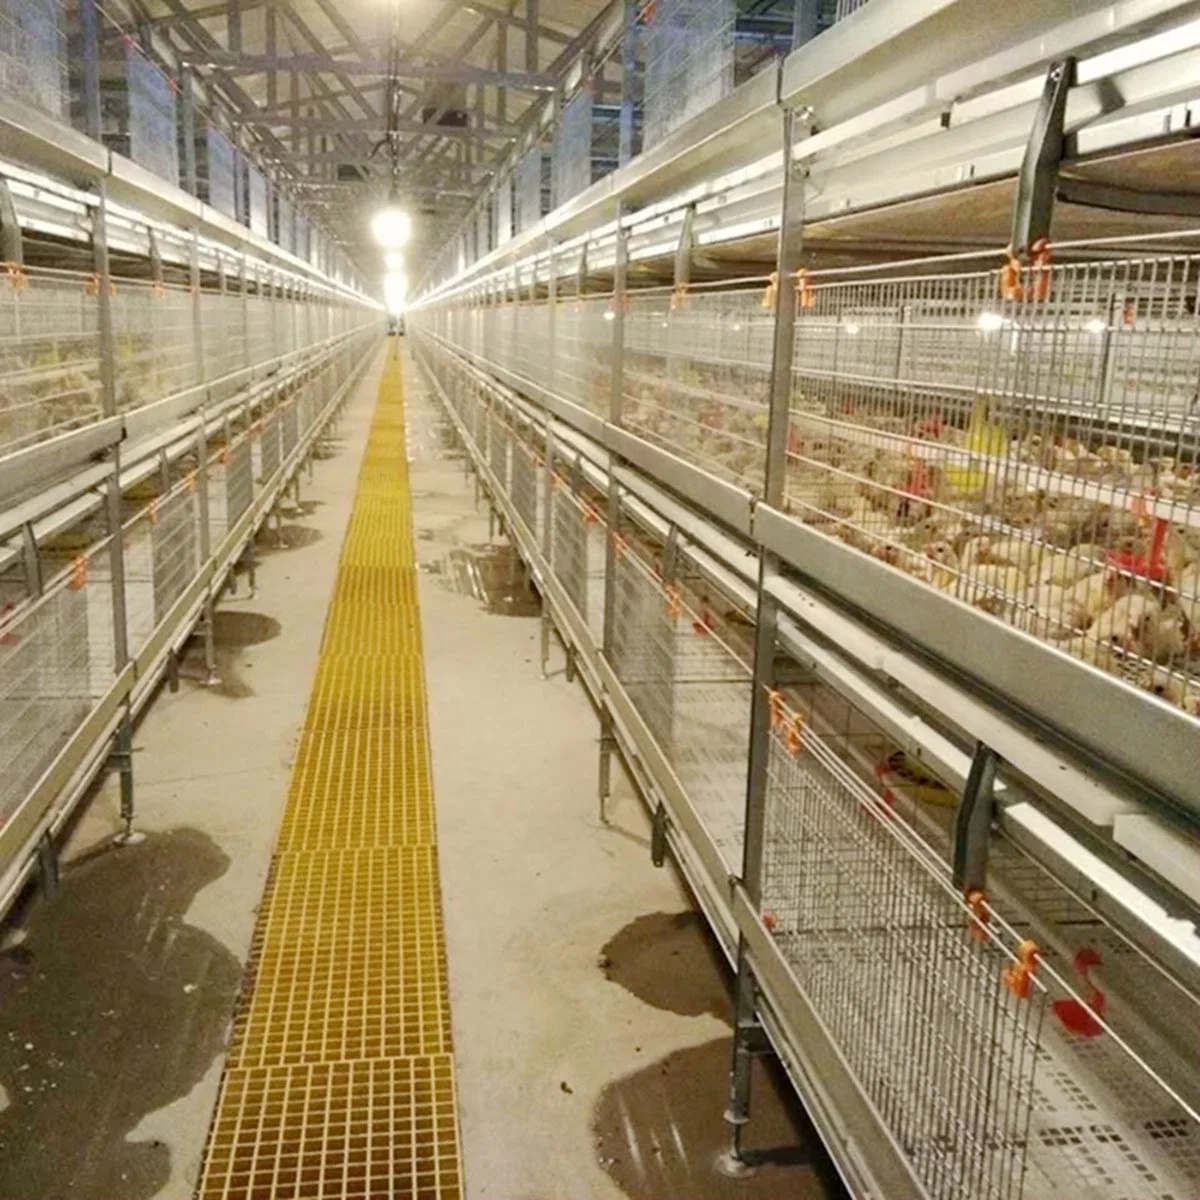 Système de cage d'élevage de poulets automatique pour la collecte des oiseaux dans un poulailler.